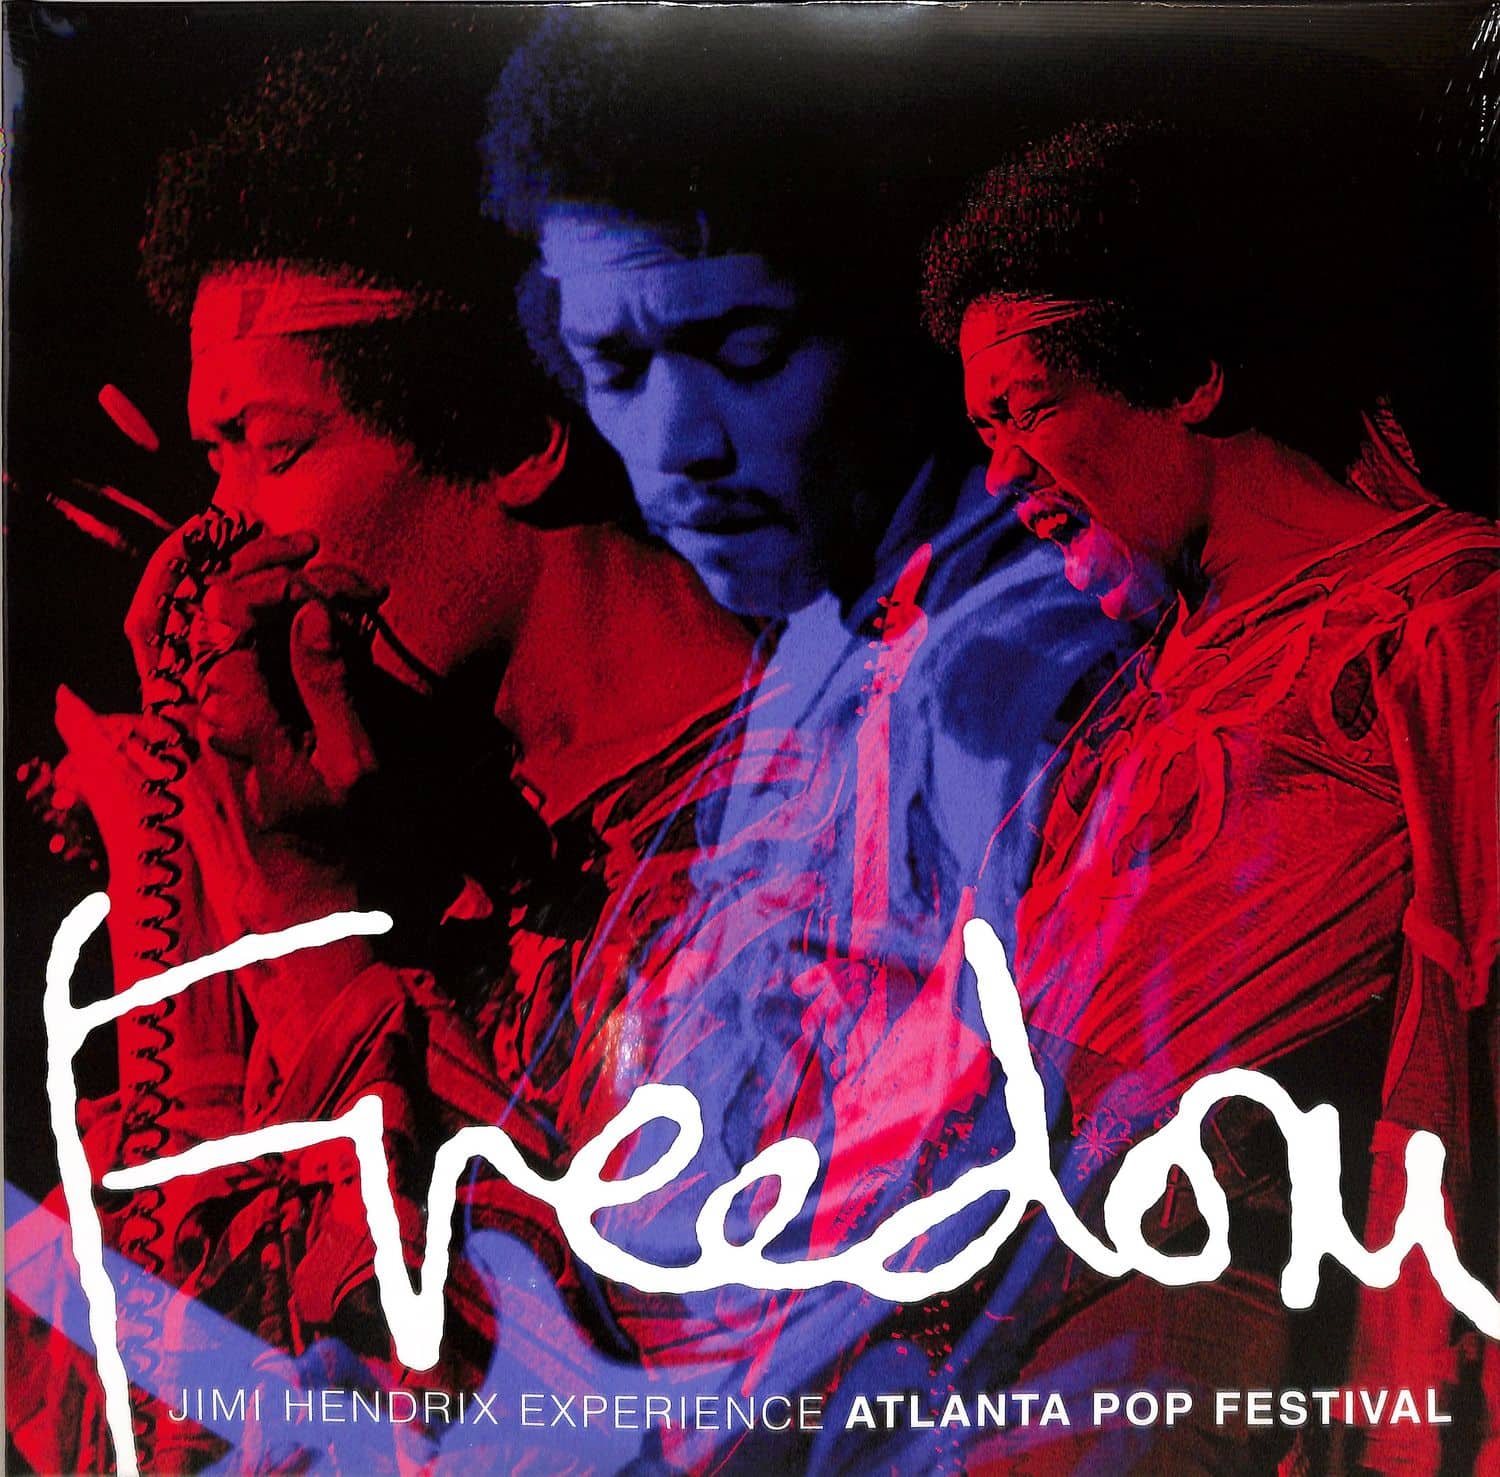 The Jimi Hendrix Experience - FREEDOM - ATLANTA POP FESTIVAL 